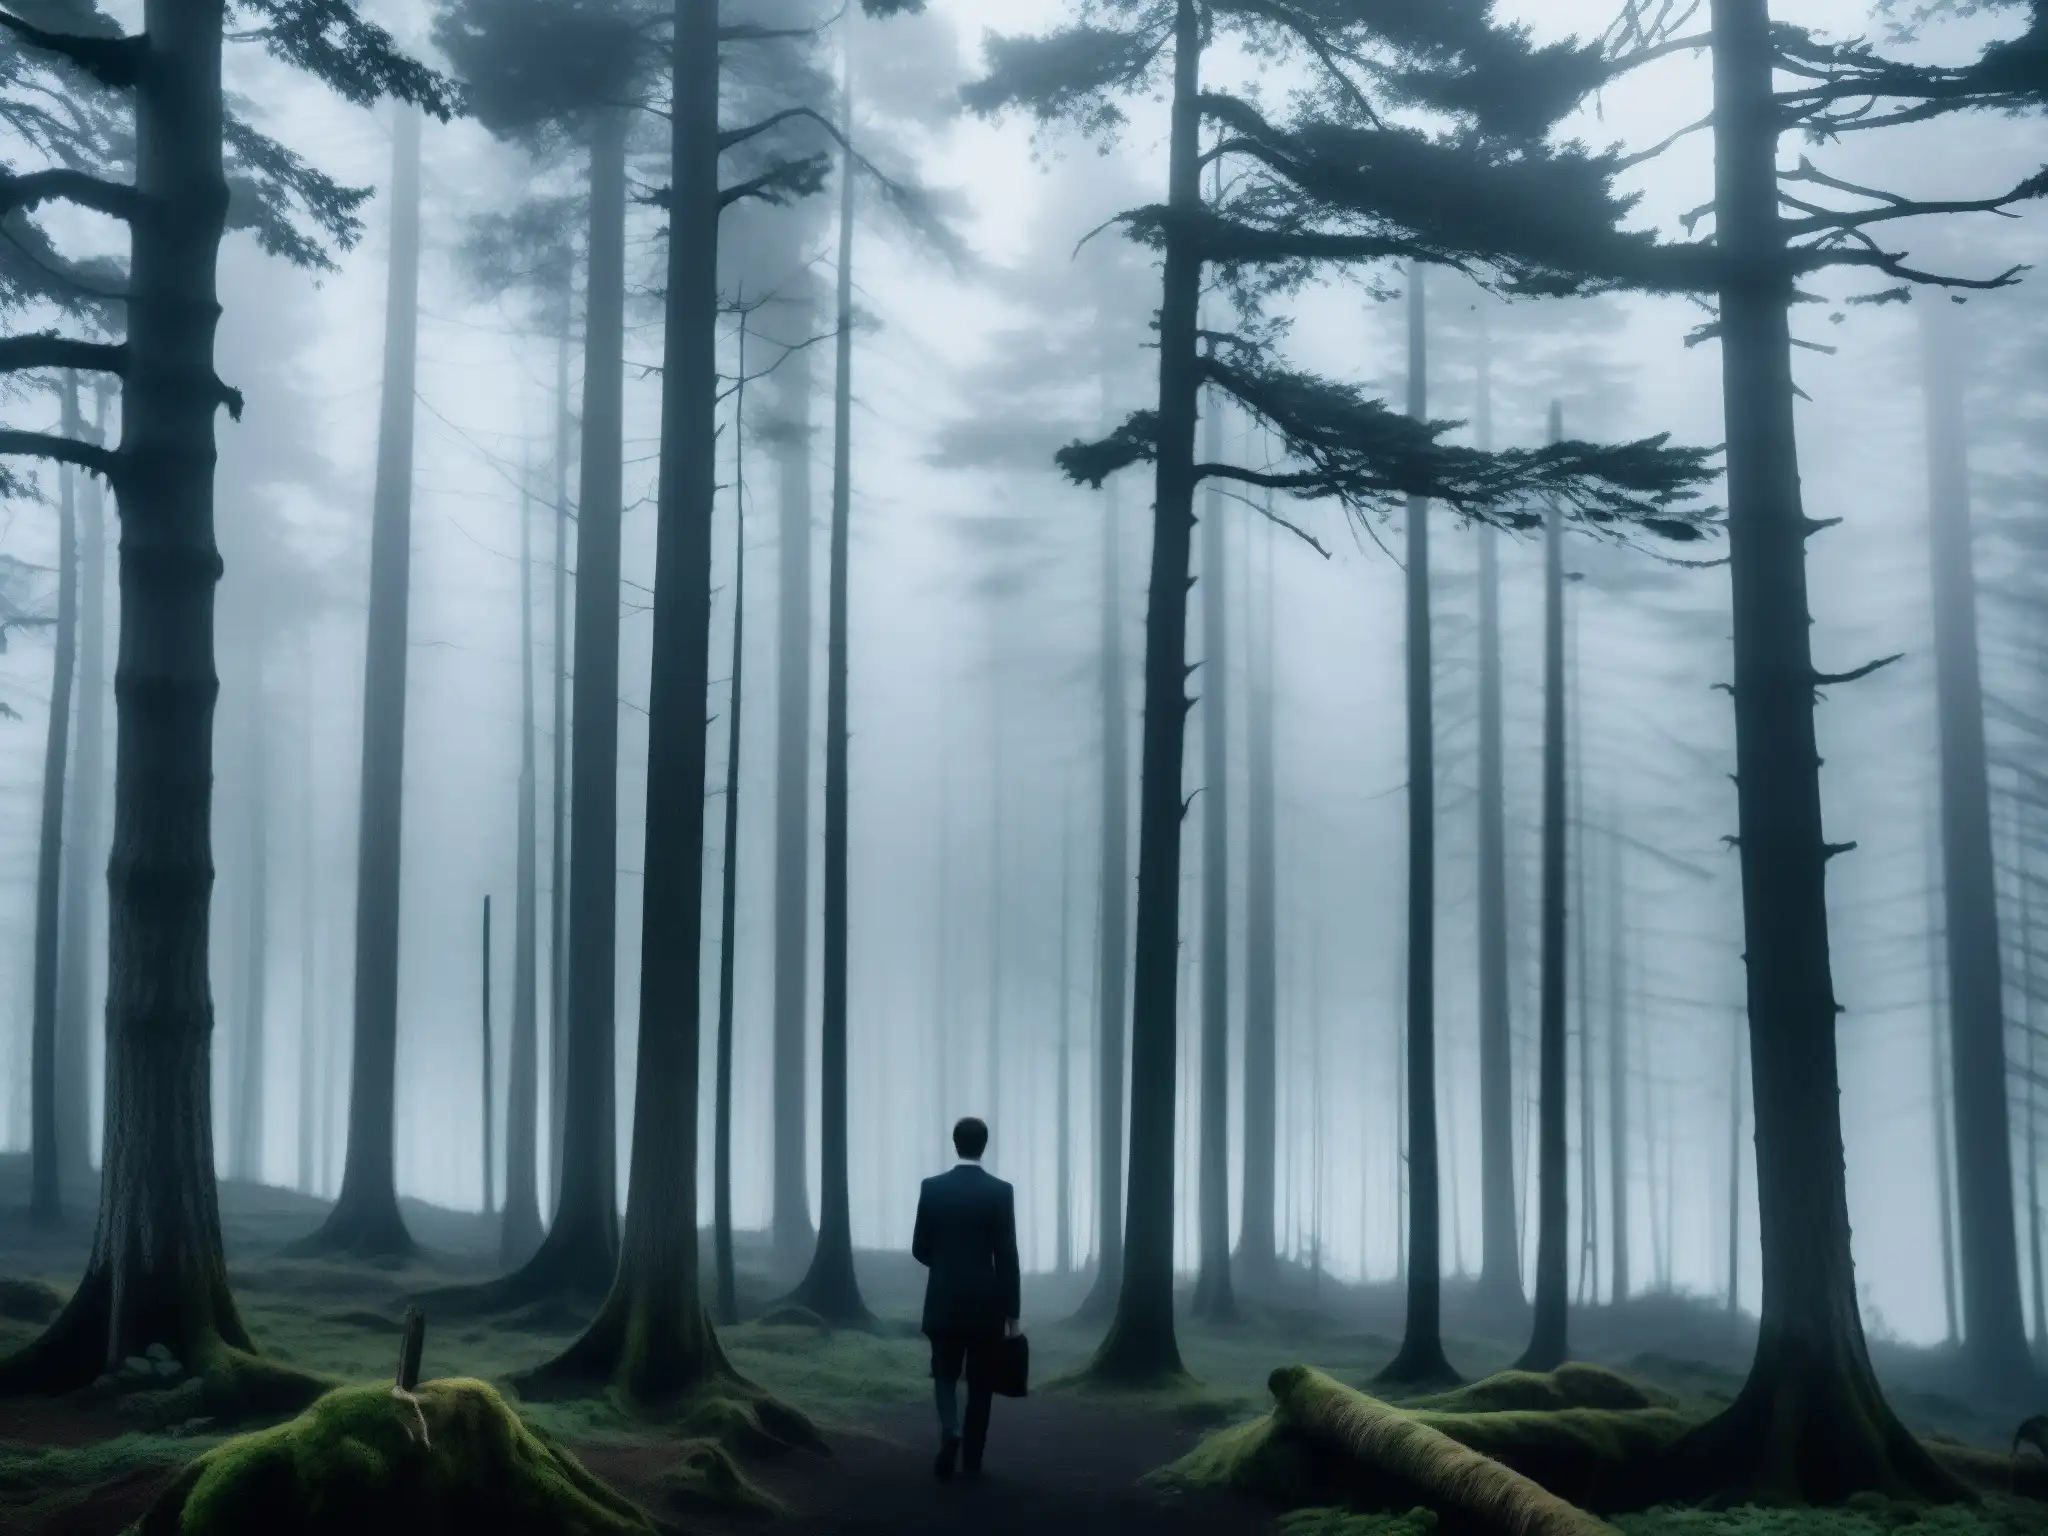 En la penumbra del bosque neblinoso al anochecer, se vislumbra la figura misteriosa del Fenómeno Slenderman en leyendas urbanas